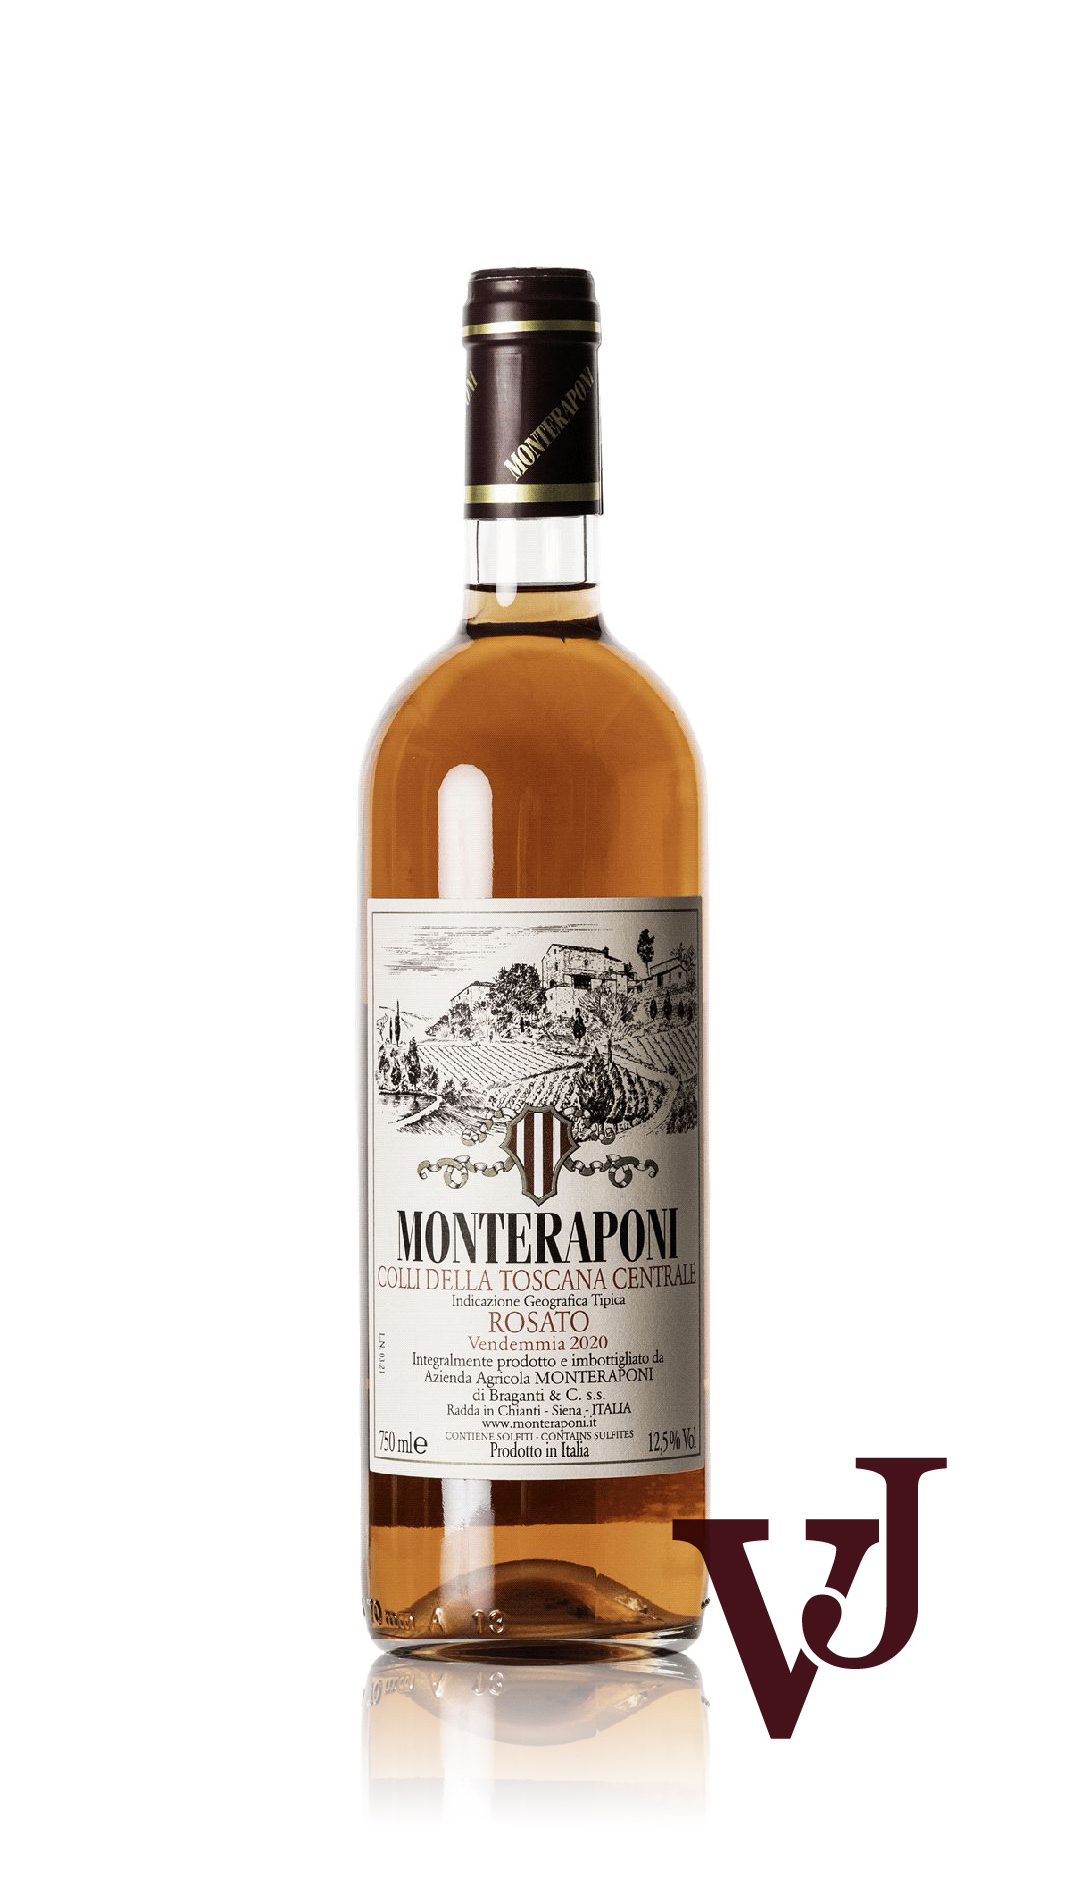 Rosé Vin - Monteraponi artikel nummer 5775501 från producenten Monteraponi från området Italien - Vinjournalen.se